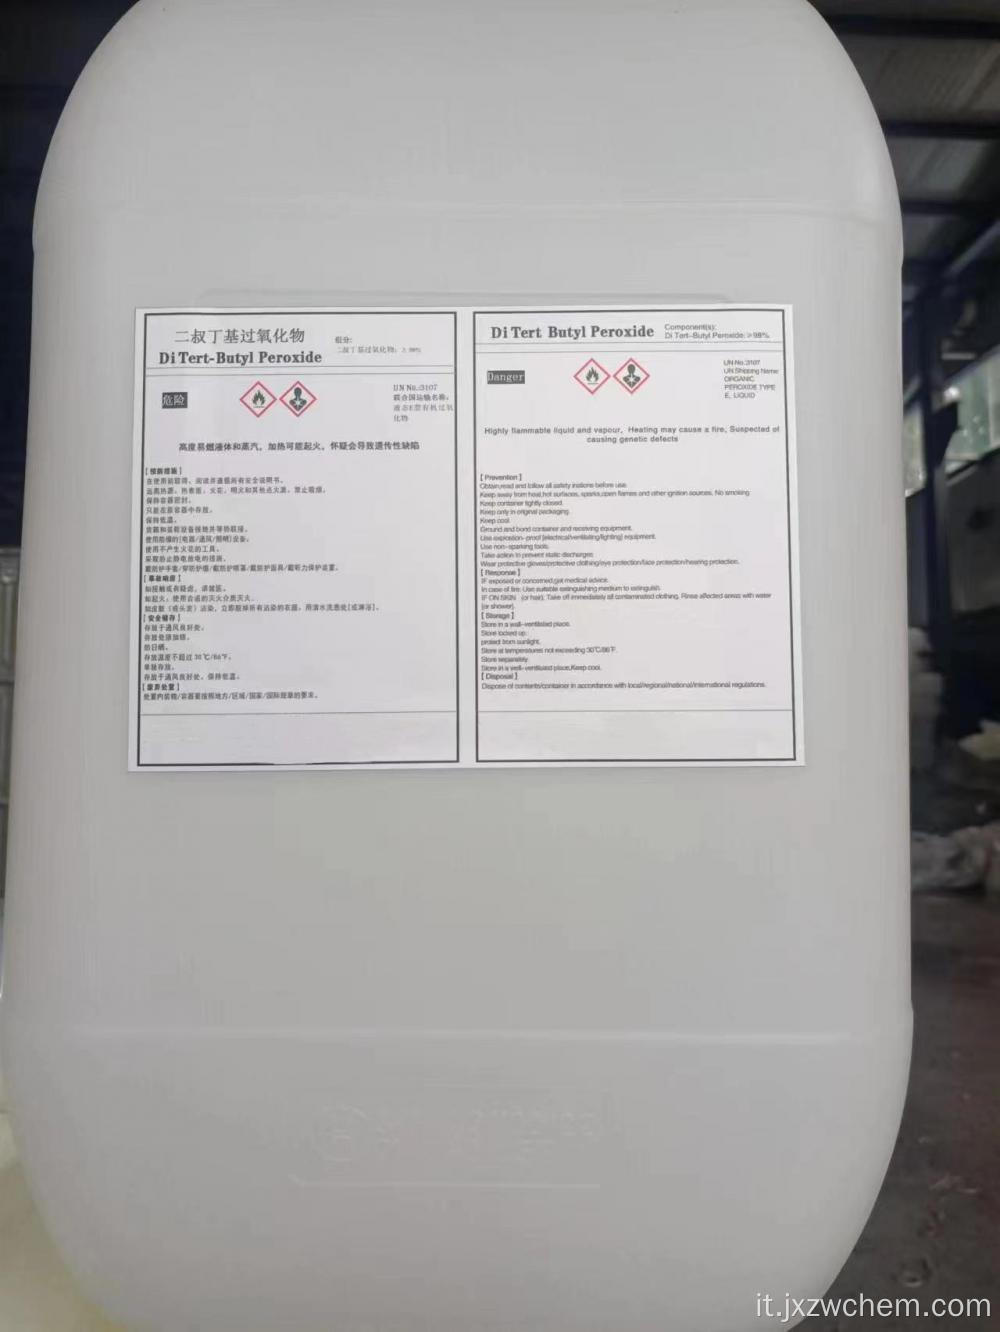 TERT- butil idroperossido (CAS NO: 75-91-2) liquido